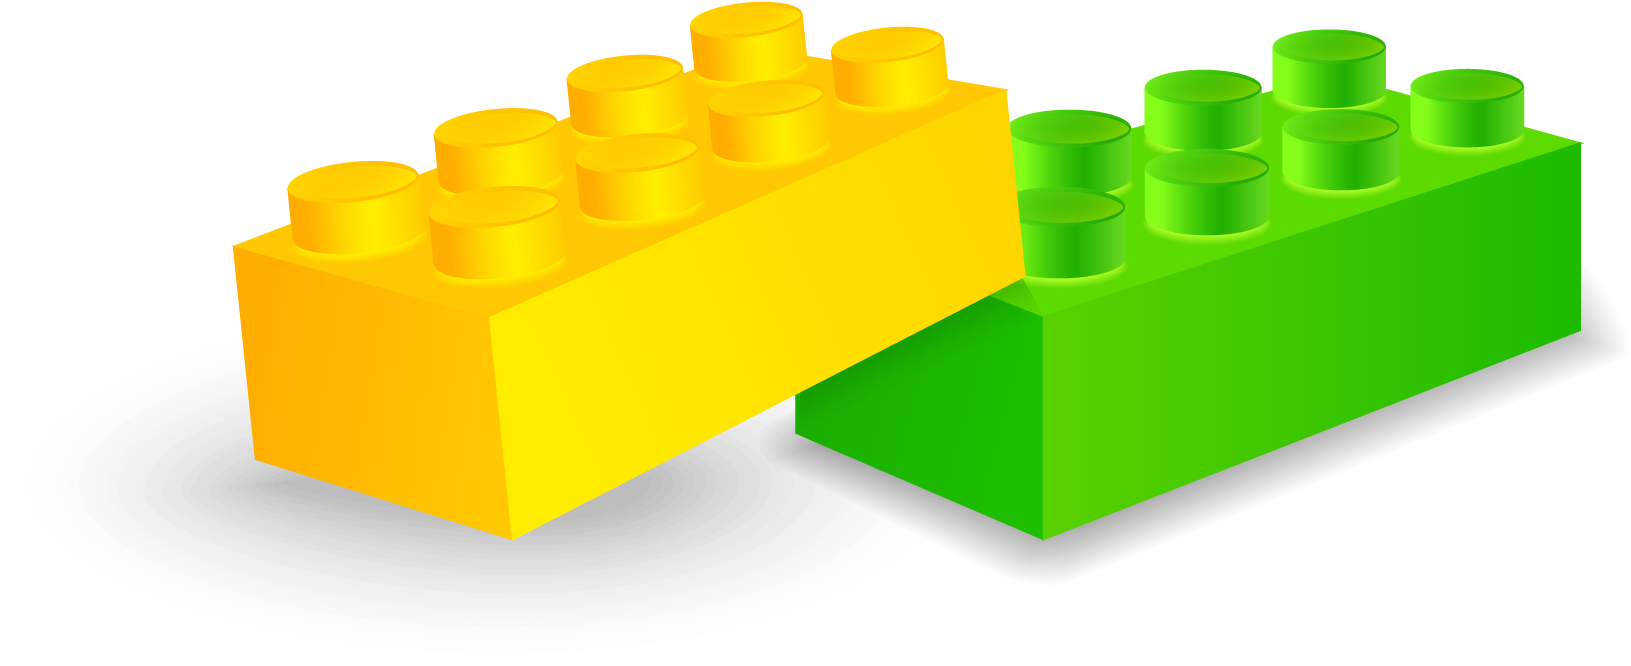 Toy Block Lego Plastic - Plastic (1640x670)